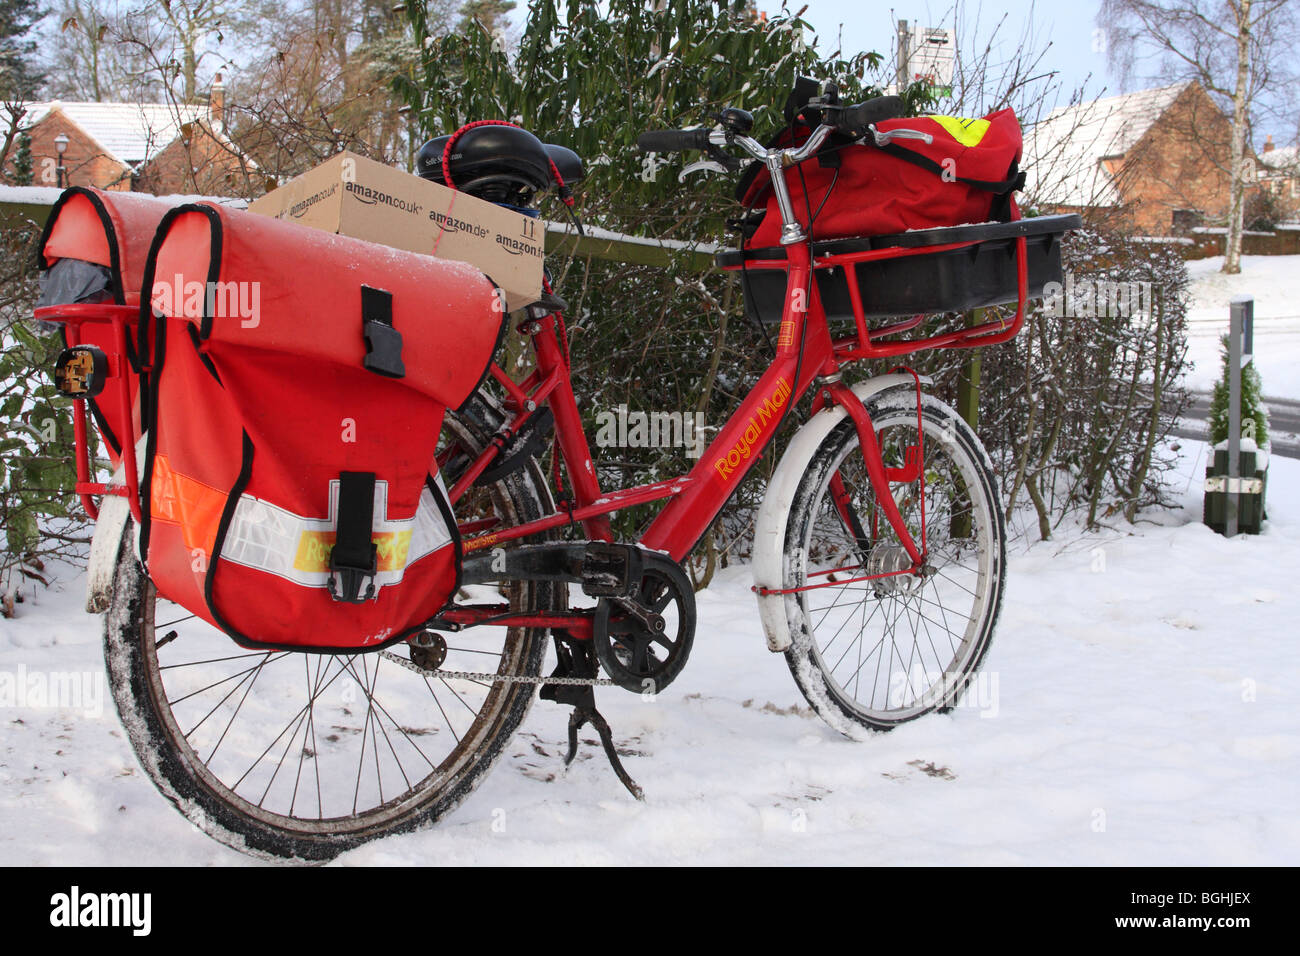 Royal Mail a bicyclette dans un village anglais en hiver. Banque D'Images